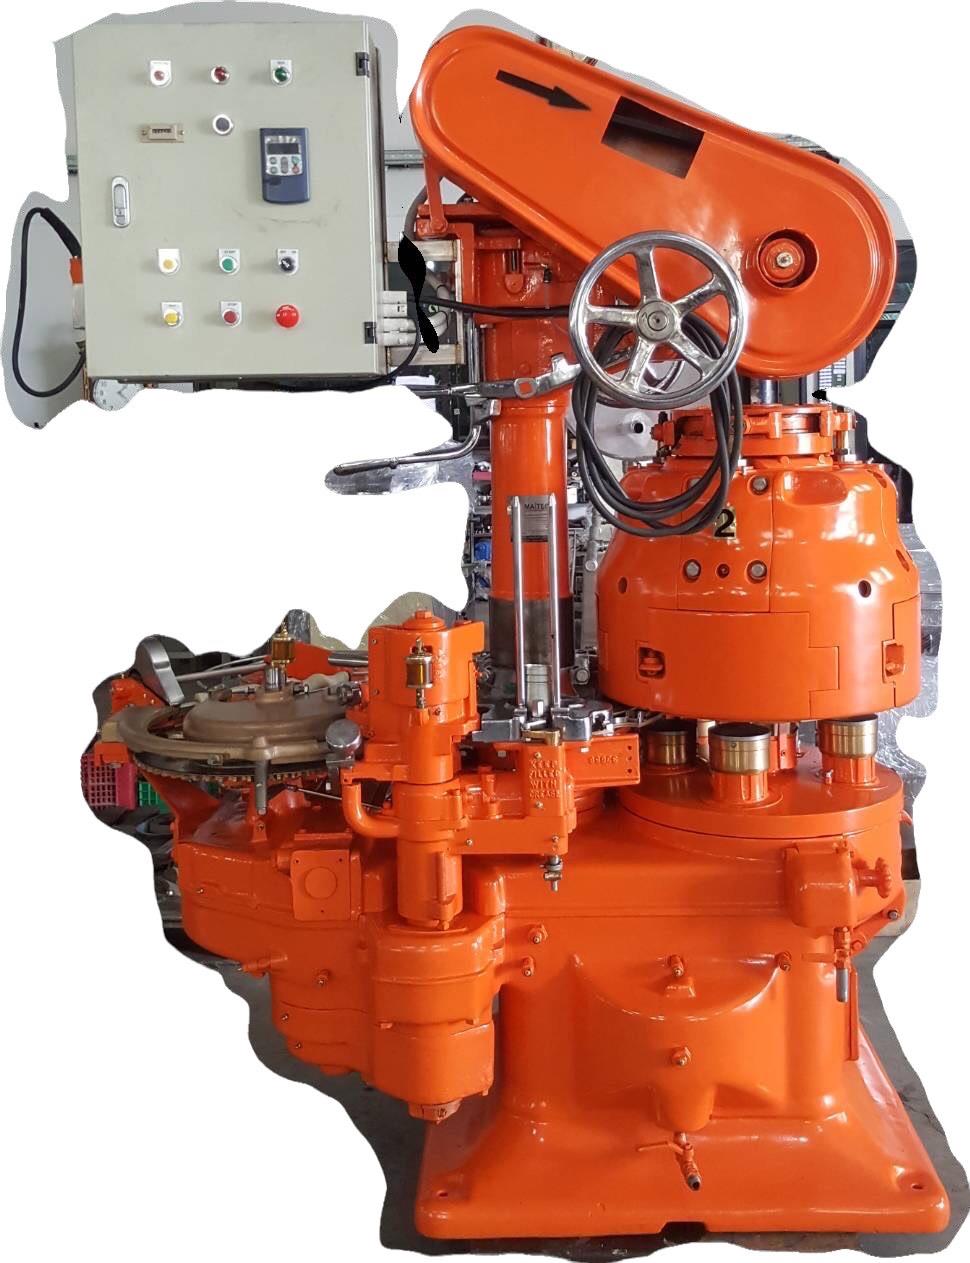 เครื่องปิดฝากระป๋อง อัตโนมัติ ระบบ Steam Flow,เครื่องปิดฝา,MAITECH CANCO,Machinery and Process Equipment/Machinery/Can